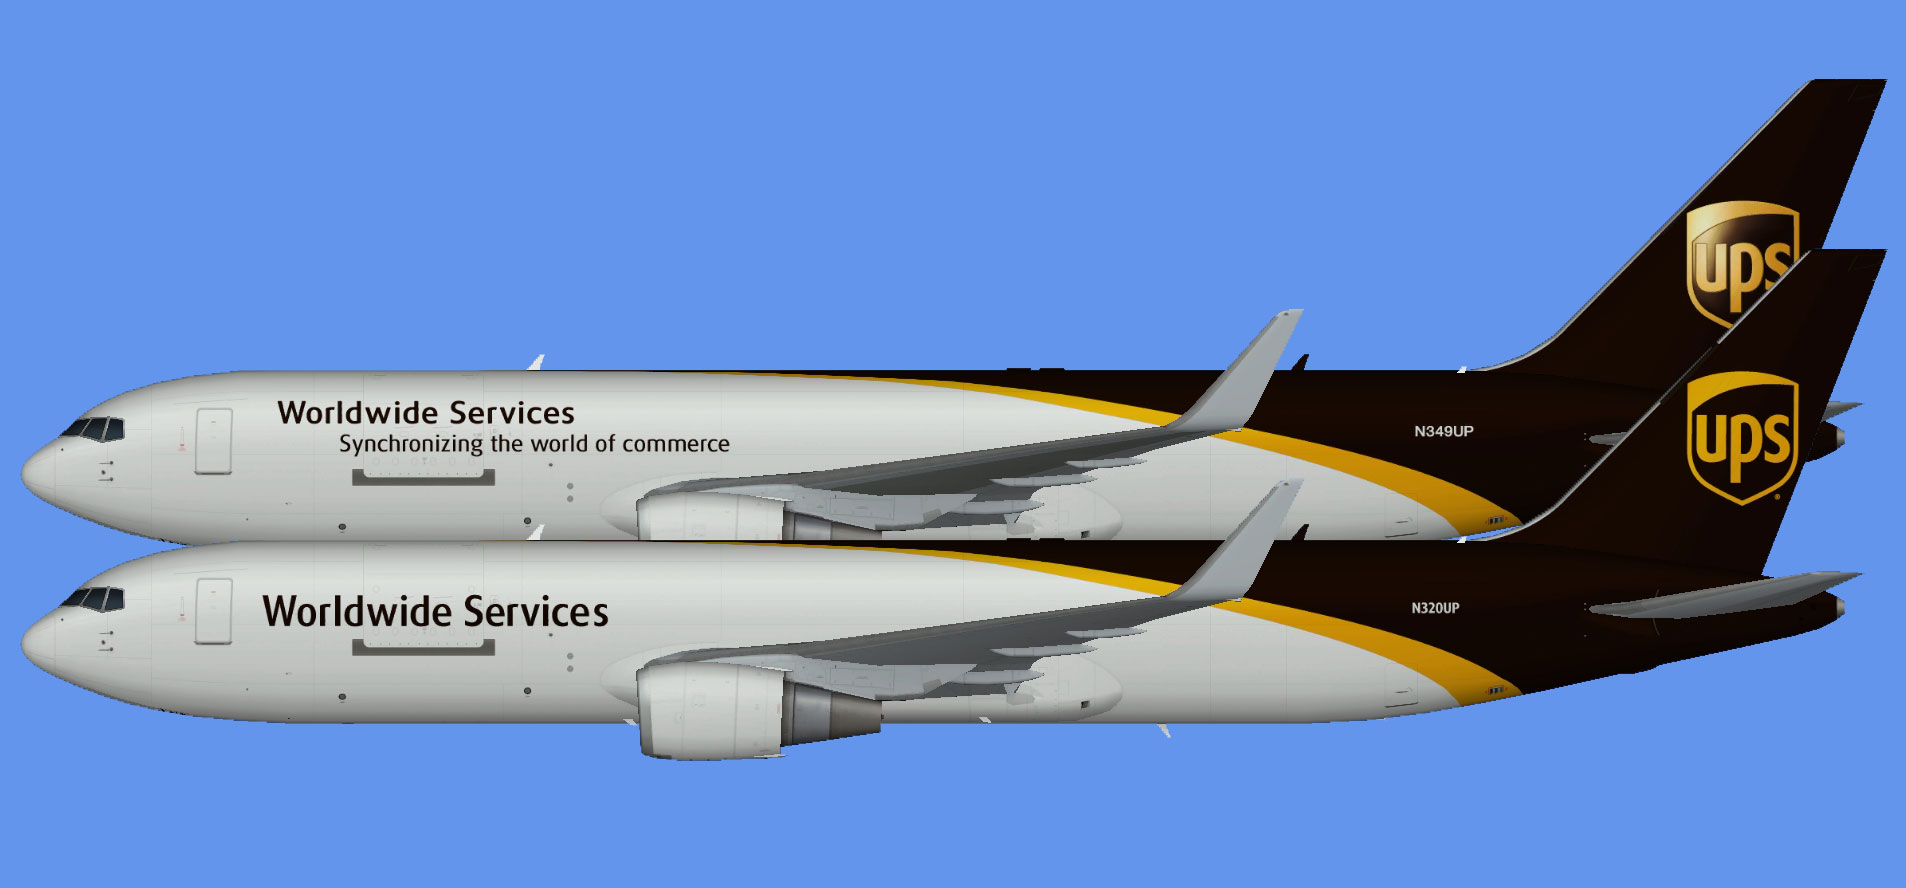 UPS Boeing 767-300